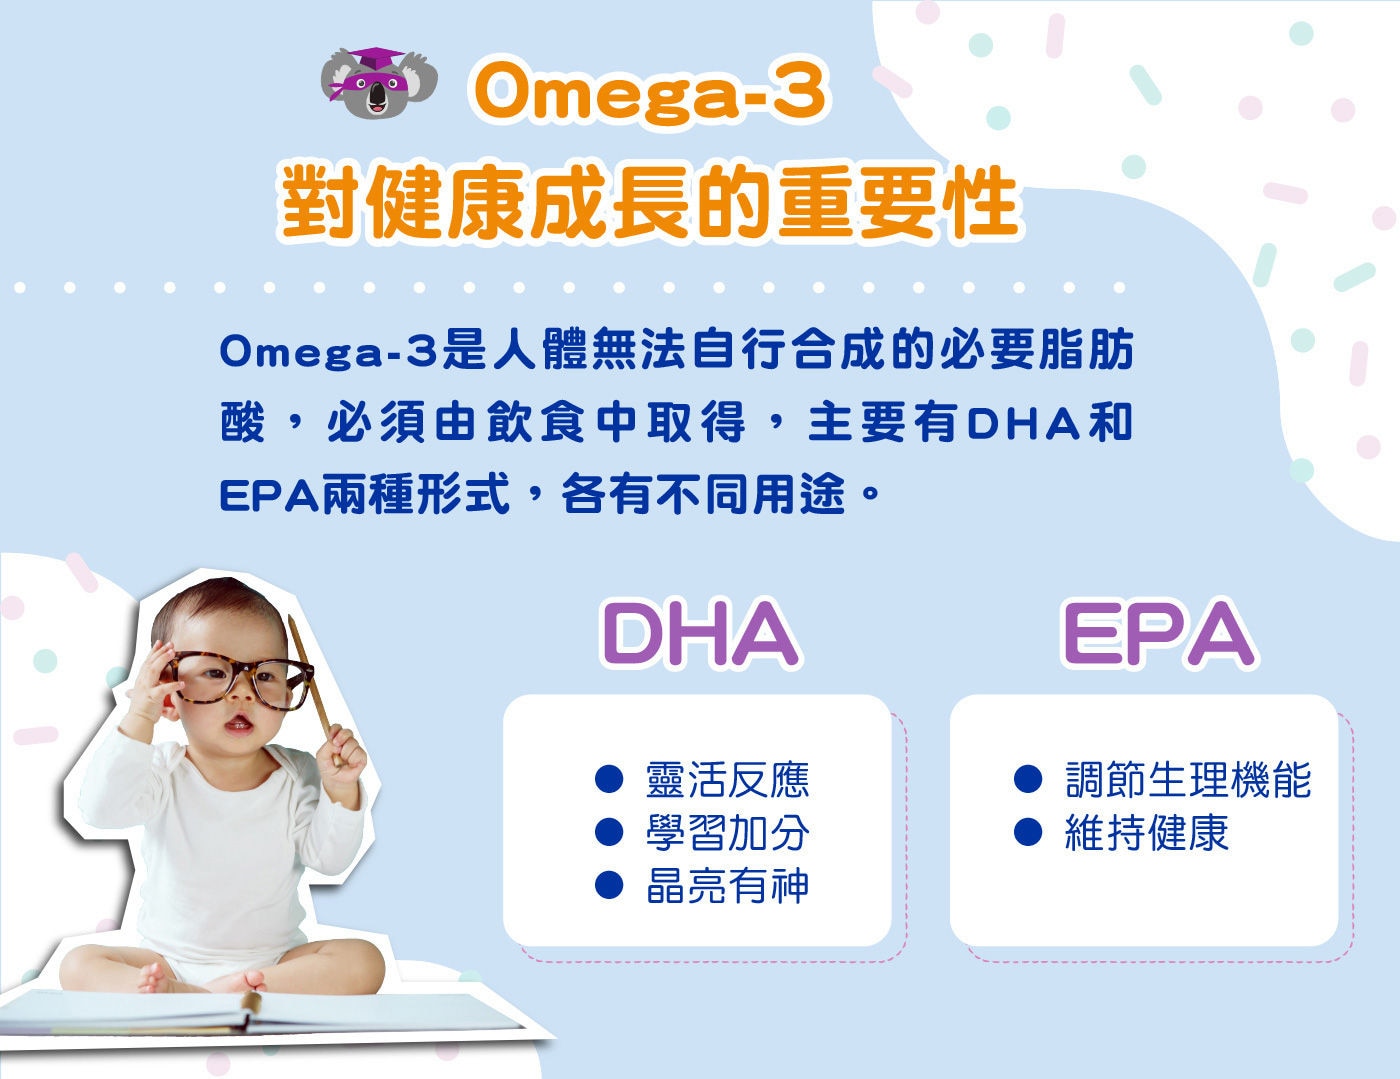 澳佳寶 機伶小子濃縮魚油膠囊120粒，Omega3對健康成長的重要性，Omega3是人體無法自行合成的必要脂肪酸，必須由飲食中取得，主要有DHA和EPA兩種形式，各有不同用途。DHA靈活反應、學習加分、晶亮有神，EPA調節生理機能、維持健康